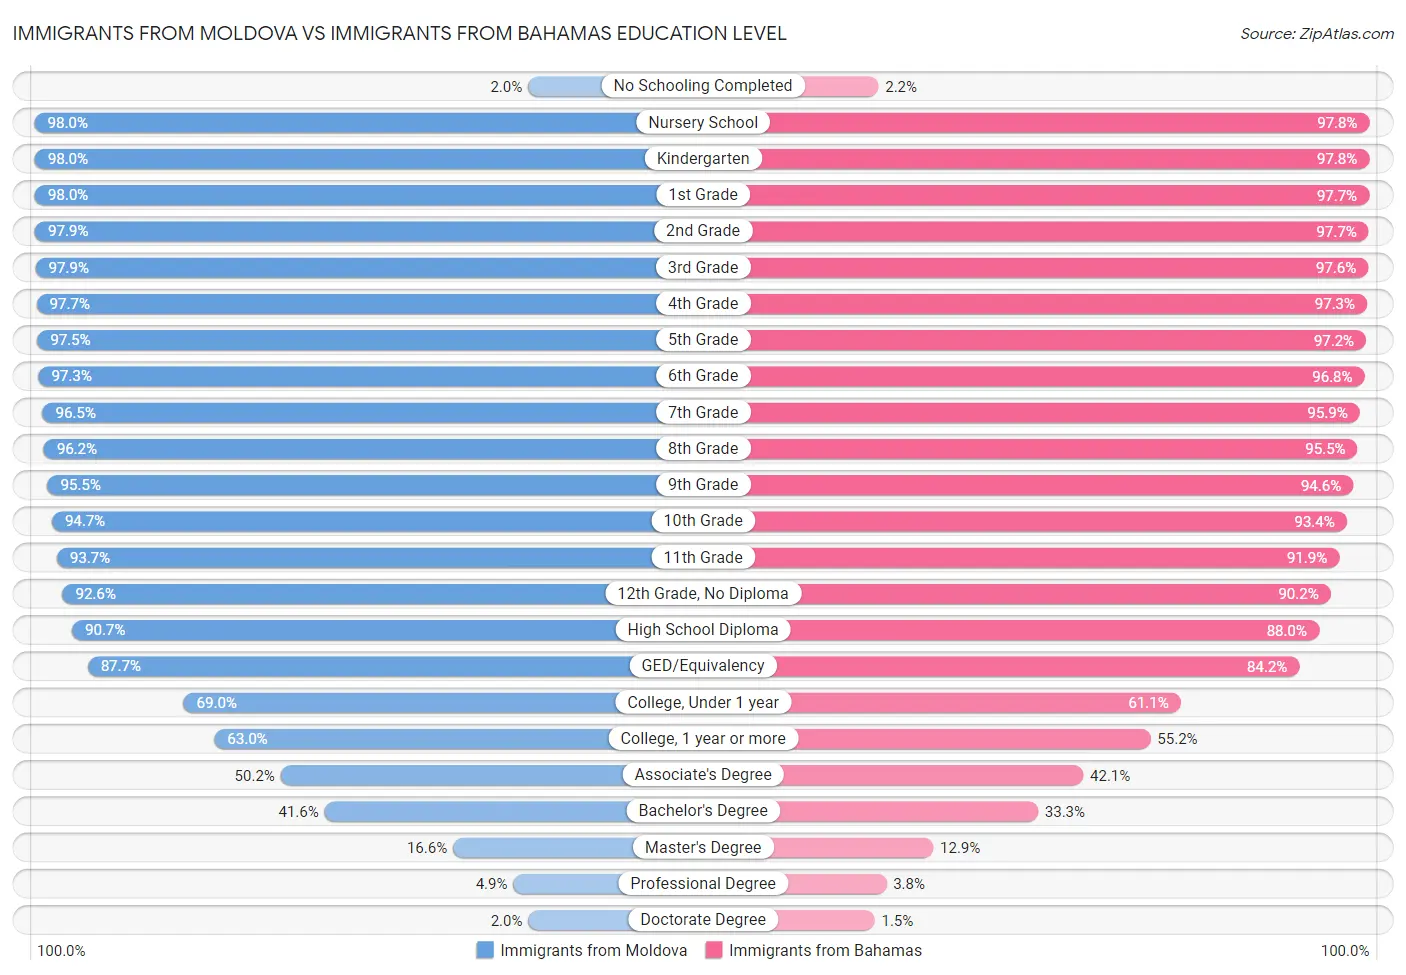 Immigrants from Moldova vs Immigrants from Bahamas Education Level